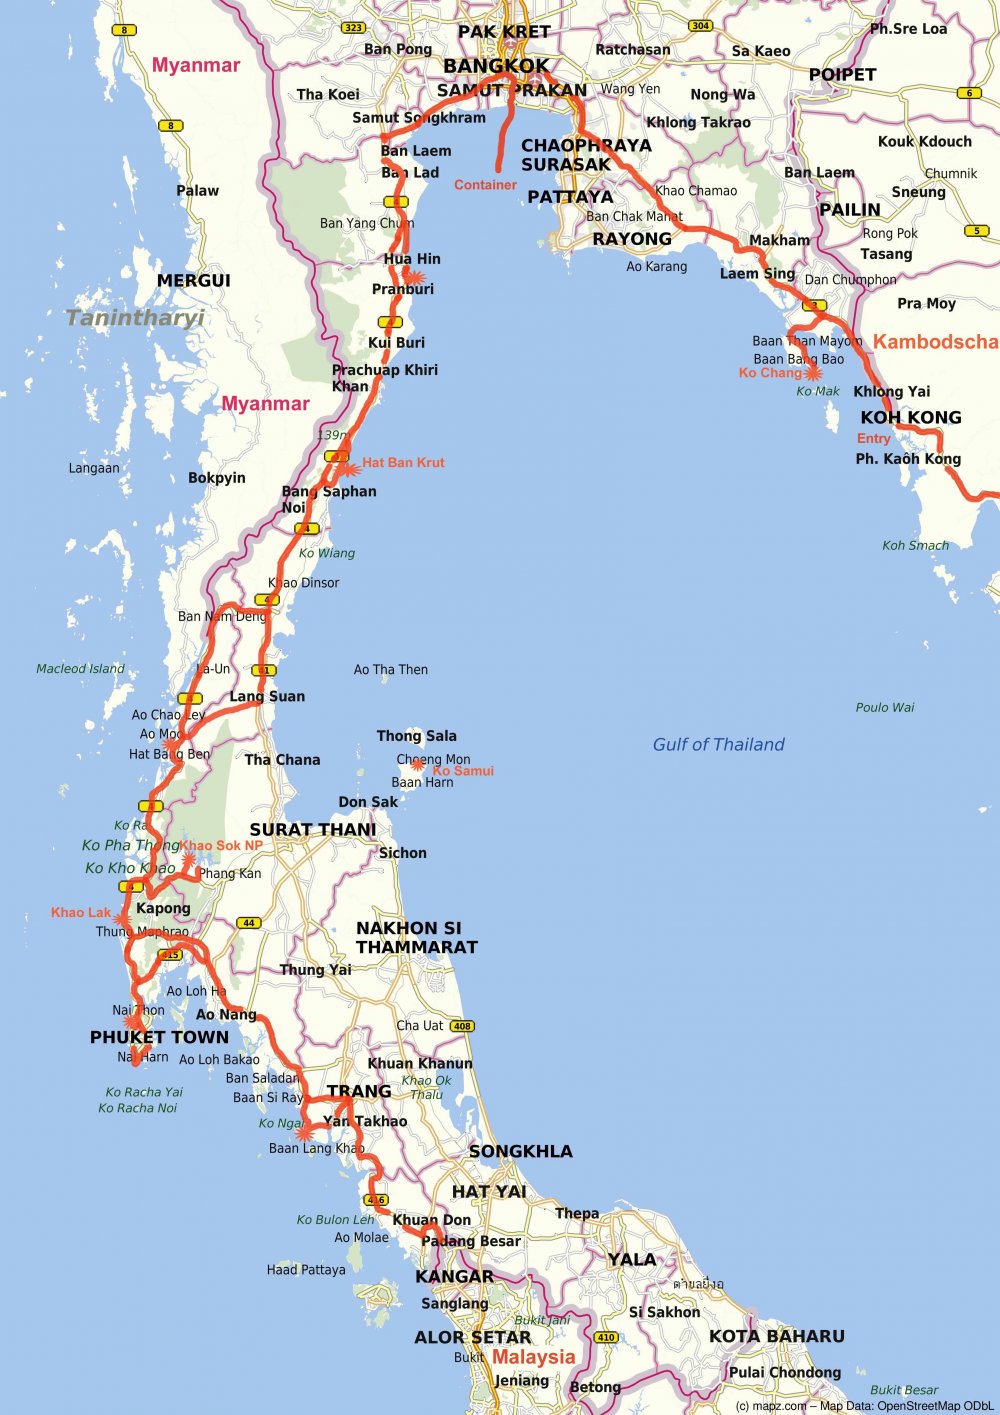 Route Thailand - (c) Mapz.com